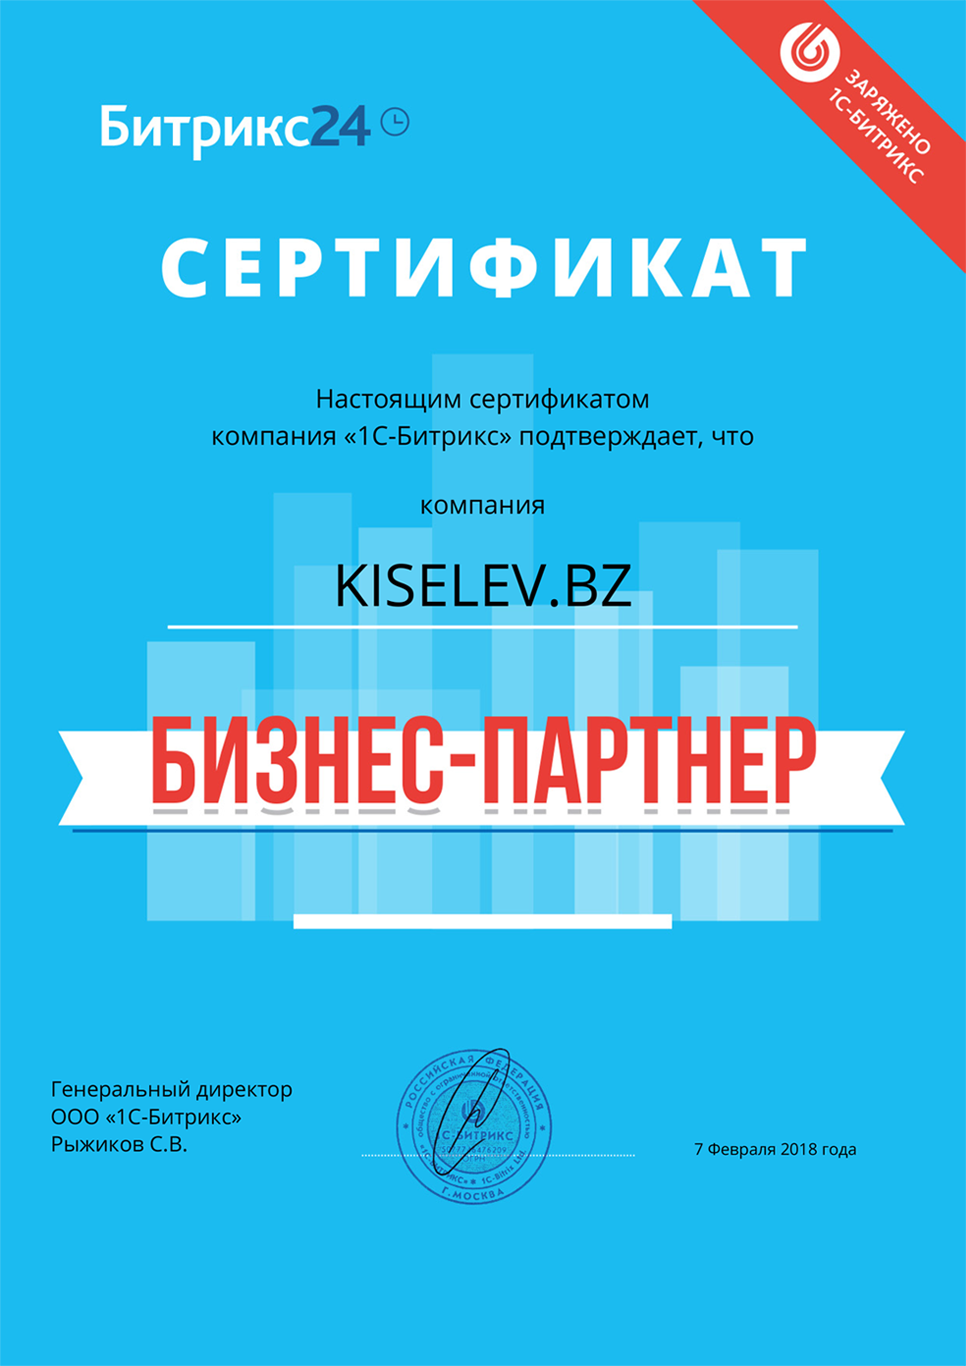 Сертификат партнёра по АМОСРМ в Юхнове